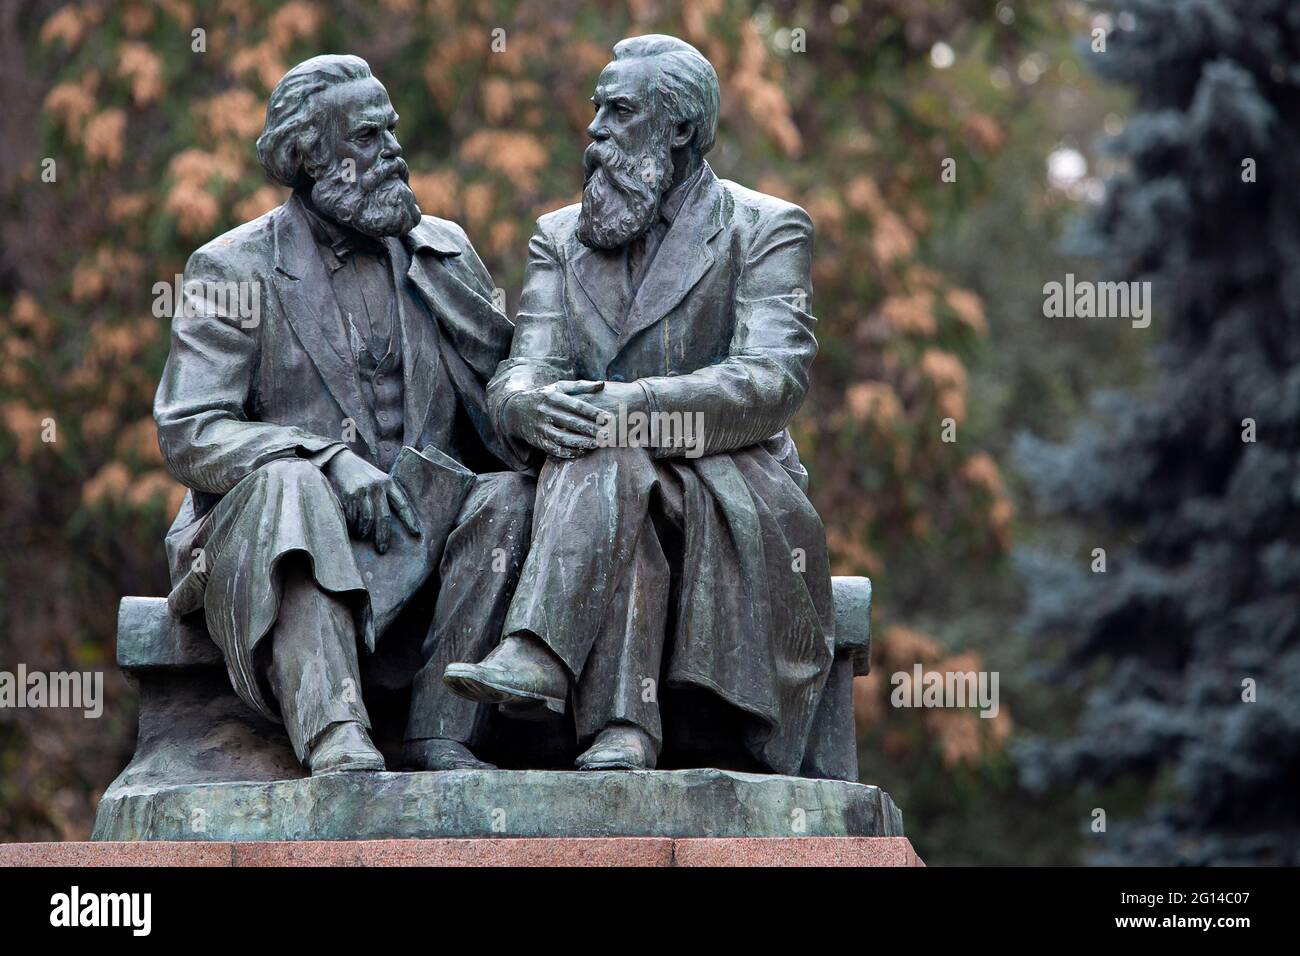 Monument de l'ère soviétique, représentant Karl Marx et Friedrich Engels à Bichkek, Kirghizistan Banque D'Images